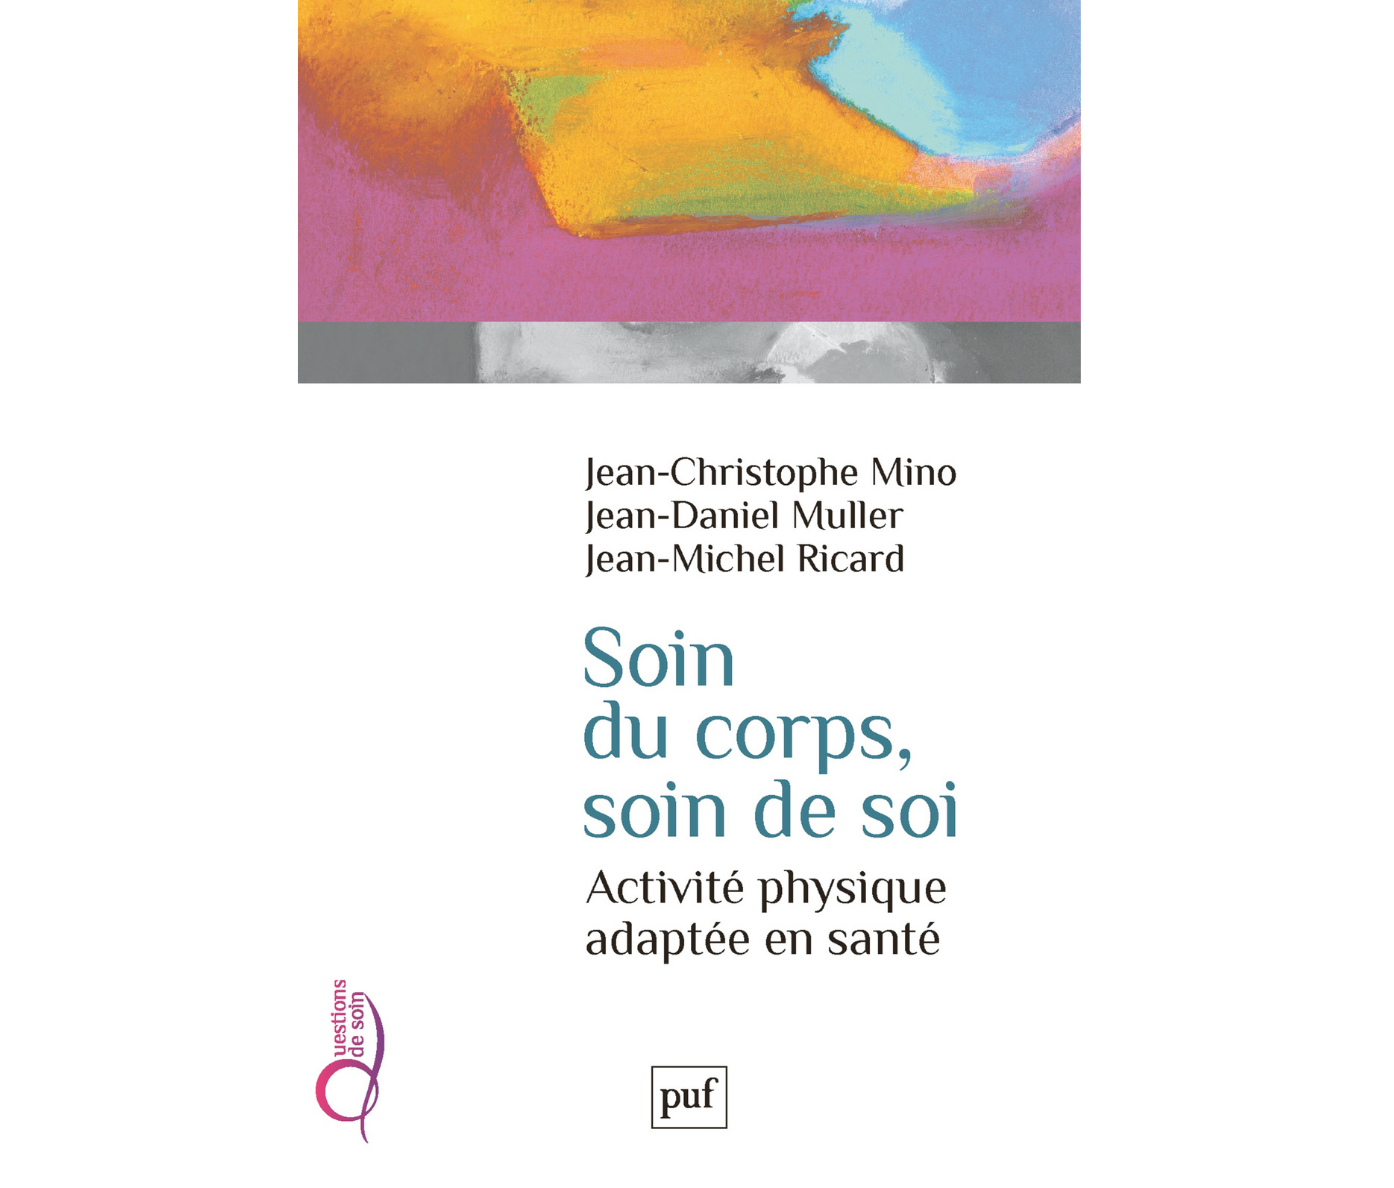 Jean-Christophe Mino, Jean-Michel Ricard et Jean-Daniel Muller - Soin du corps, soin de soi. Paru aux Presses universitaires de France, 2018, 86 pages.